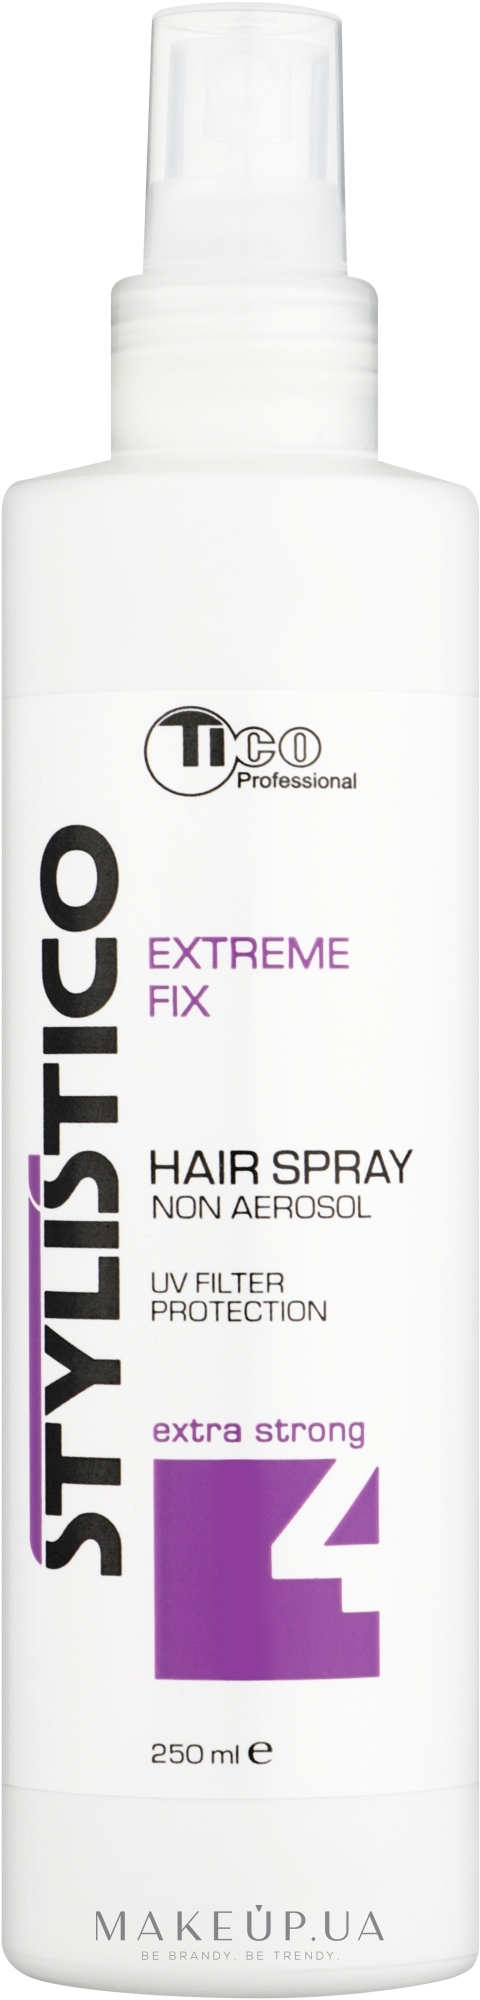 Жидкий лак для волос экстра сильной фиксации - Tico Professional Stylistico Extreme Fix Hair Spray — фото 250ml